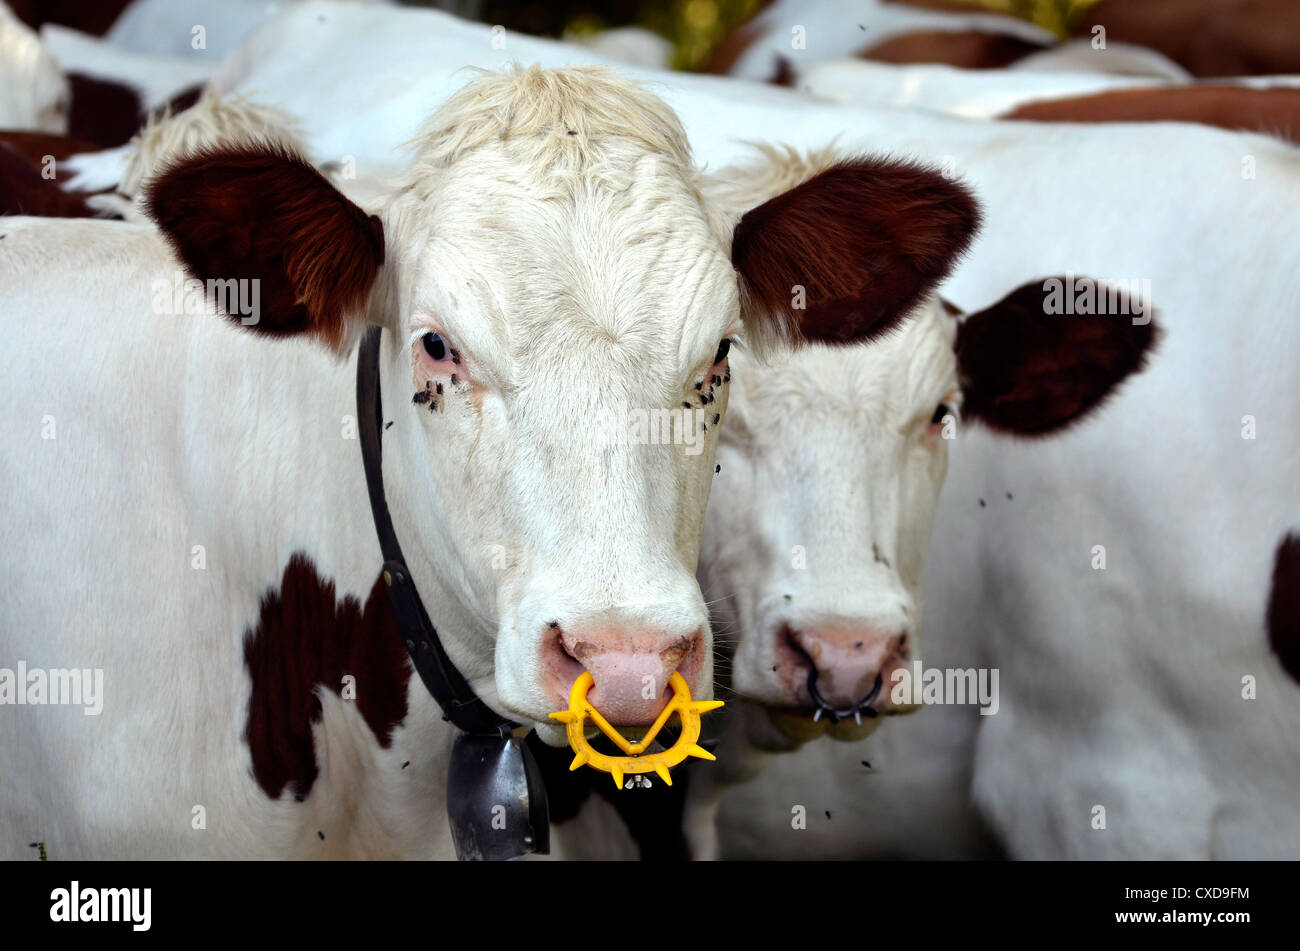 Weiße Kühe mit einem Ring in der Nase und zahlreiche fliegen um die Augen,  Region Rhône-Alpes in Frankreich Stockfotografie - Alamy